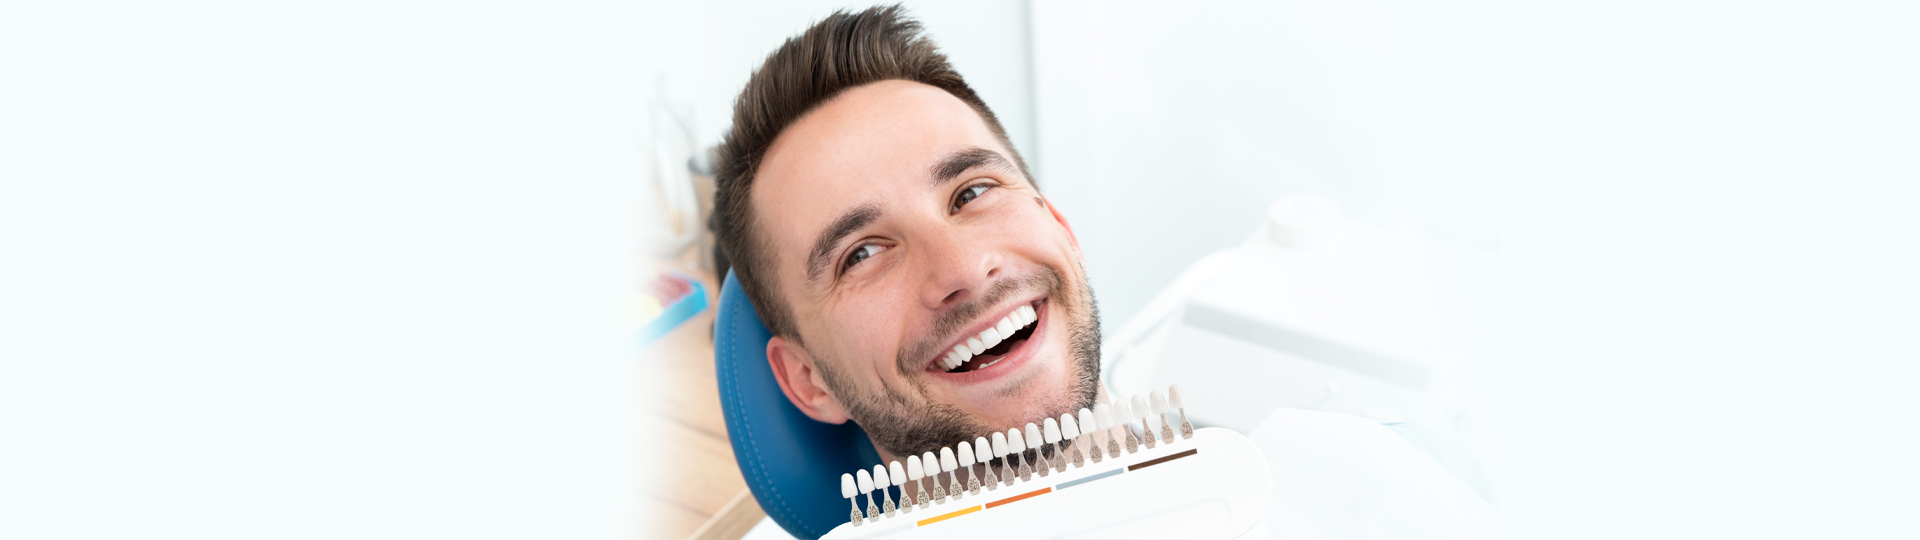 Can Dental Veneers Conceal Teeth Imperfections?